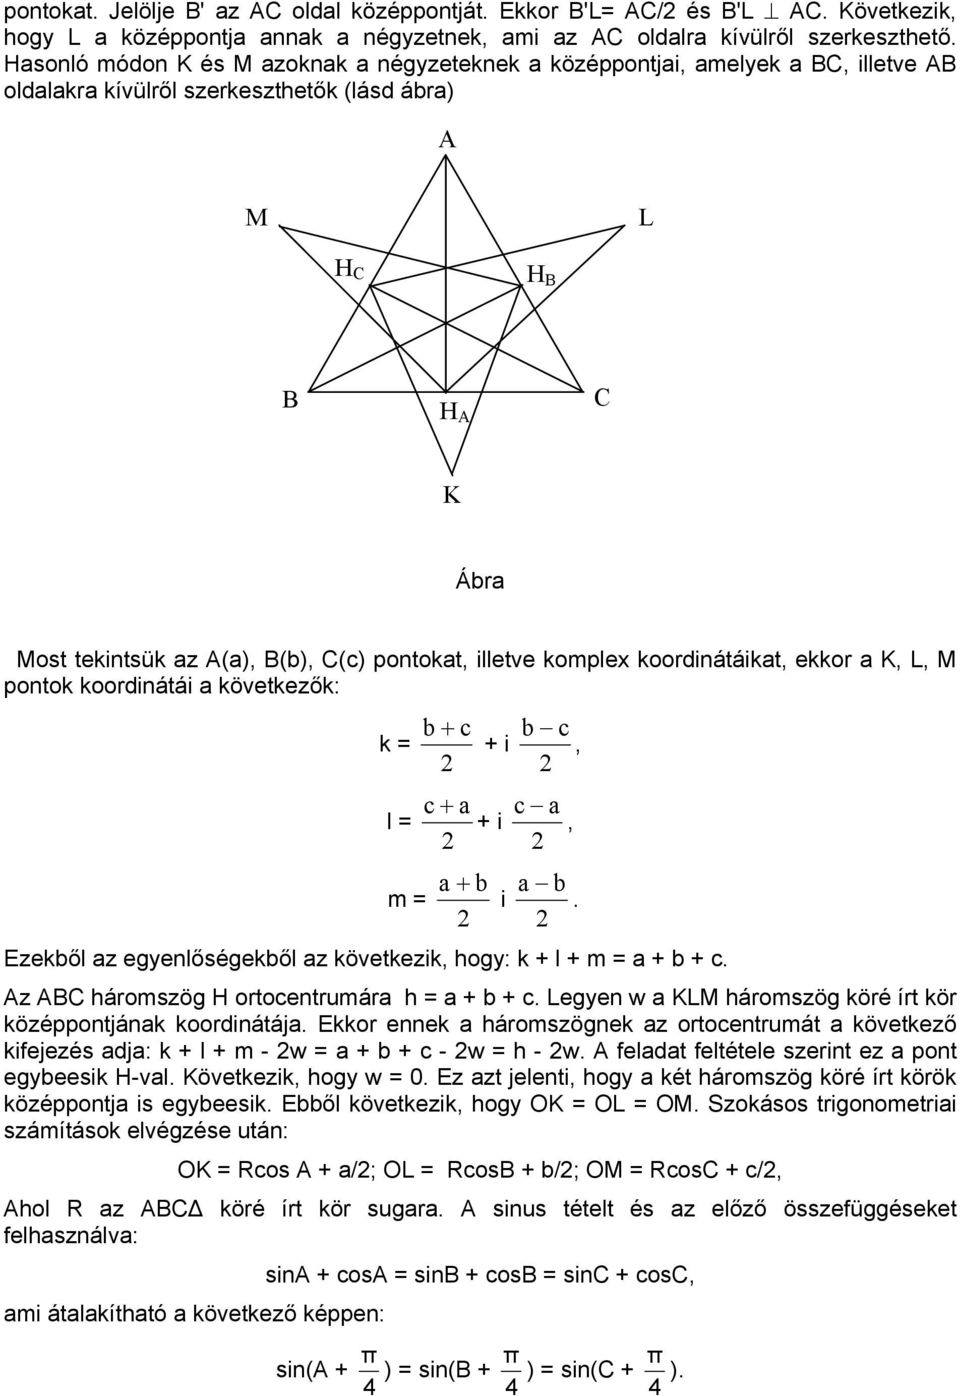 koordinátáikt, ekkor K, L, M pontok koordinátái következők: k l m + c c + i, c + c + i, + i. Ezekől z egyenlőségekől z következik, hogy: k + l + m + + c. z B háromszög H ortocentrumár h + + c.